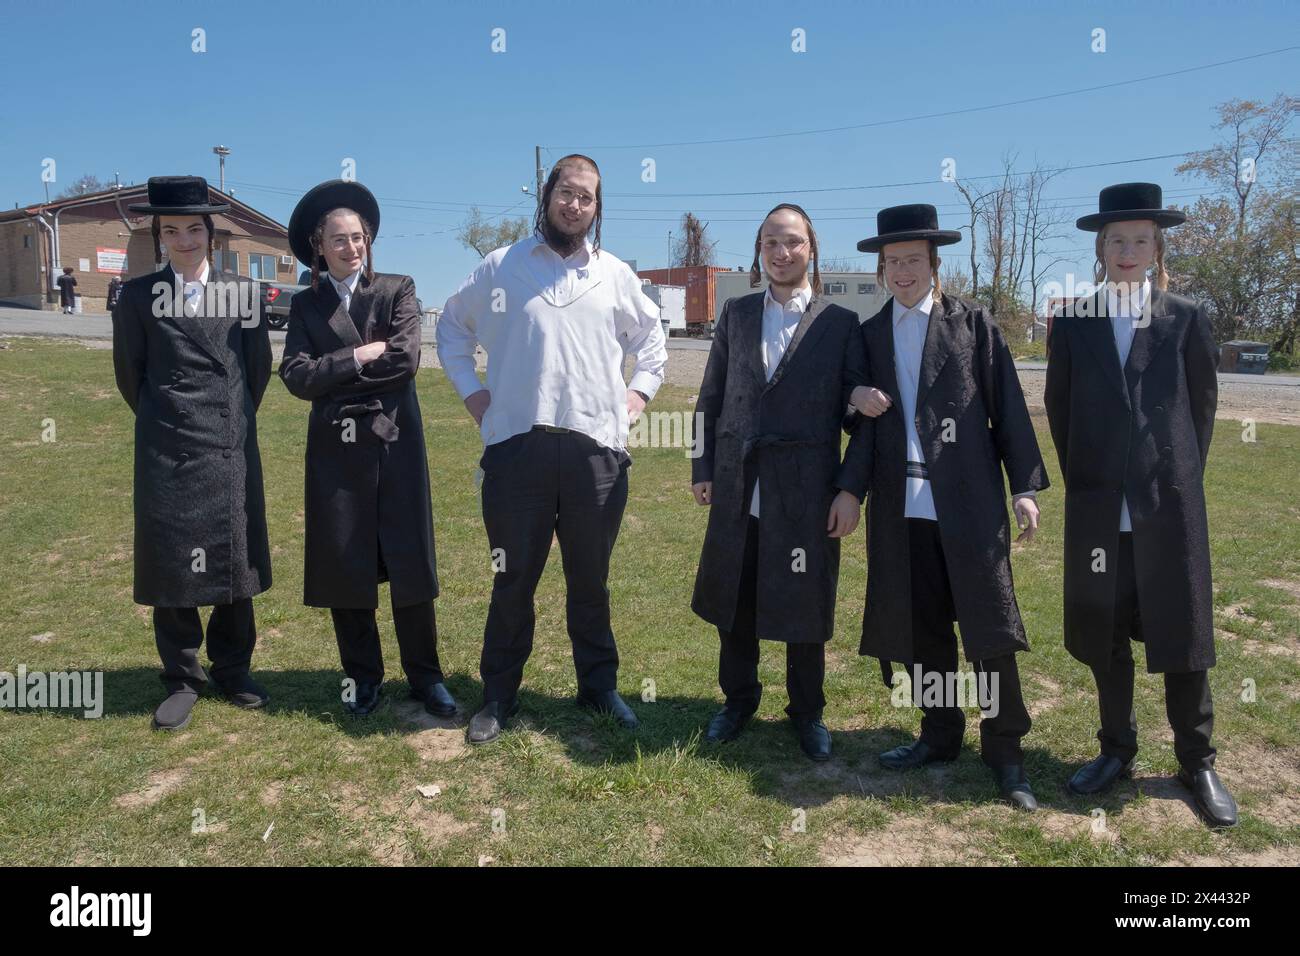 Una foto in posa di 7 ragazzi ebrei ortodossi della dinastia chassidica Satmar. All'aperto a Kiryas Joel, Rockland County, New York. Foto Stock